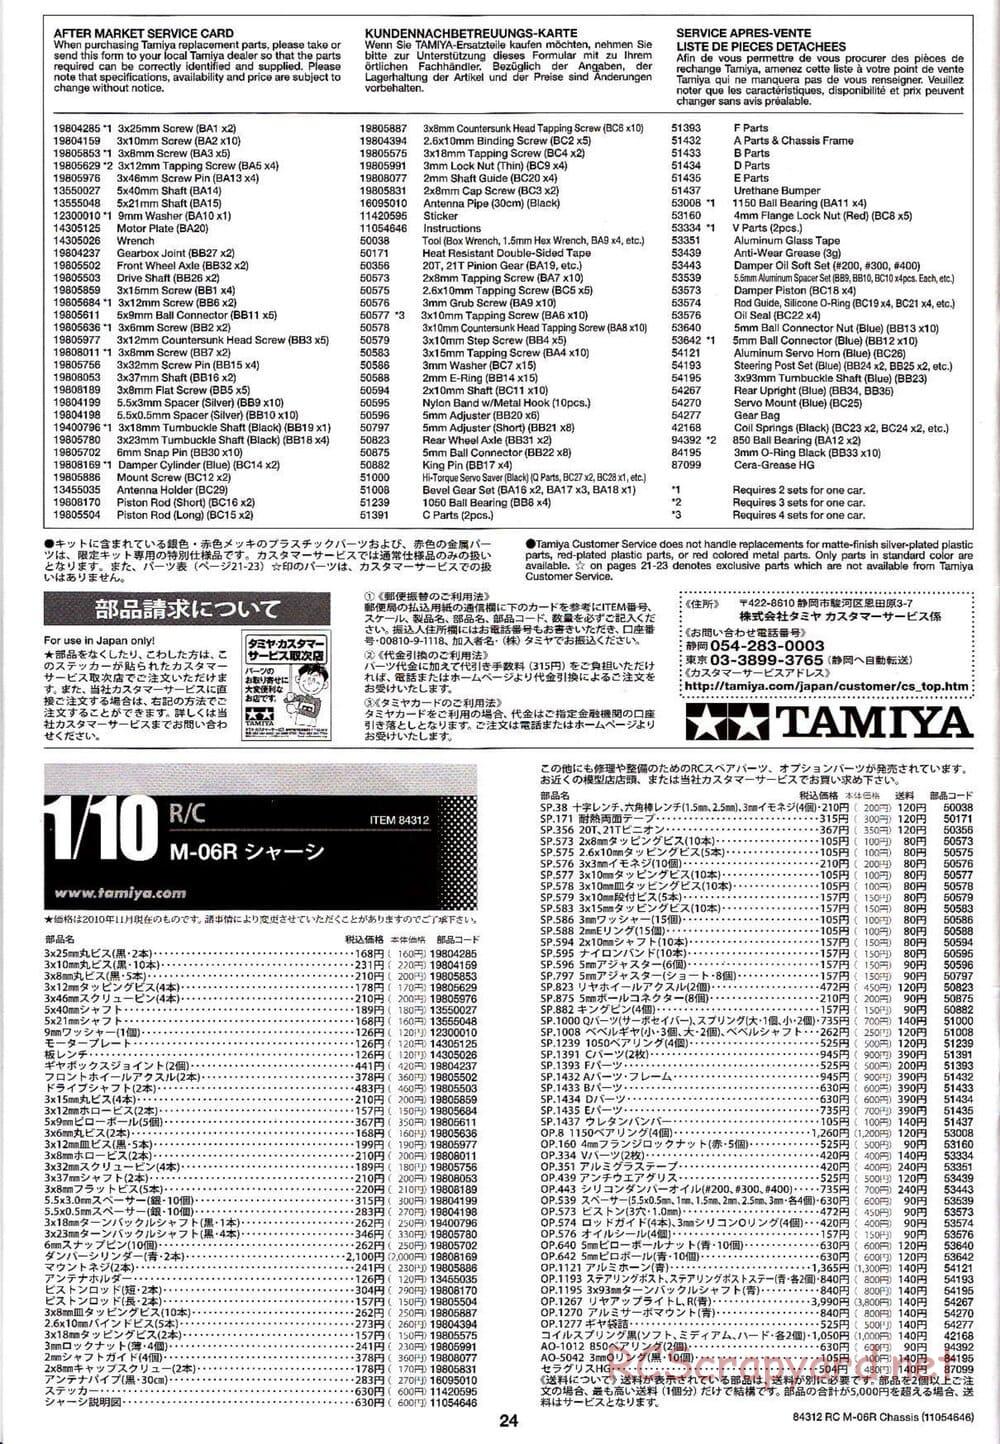 Tamiya - M-06R Chassis - Manual - Page 24